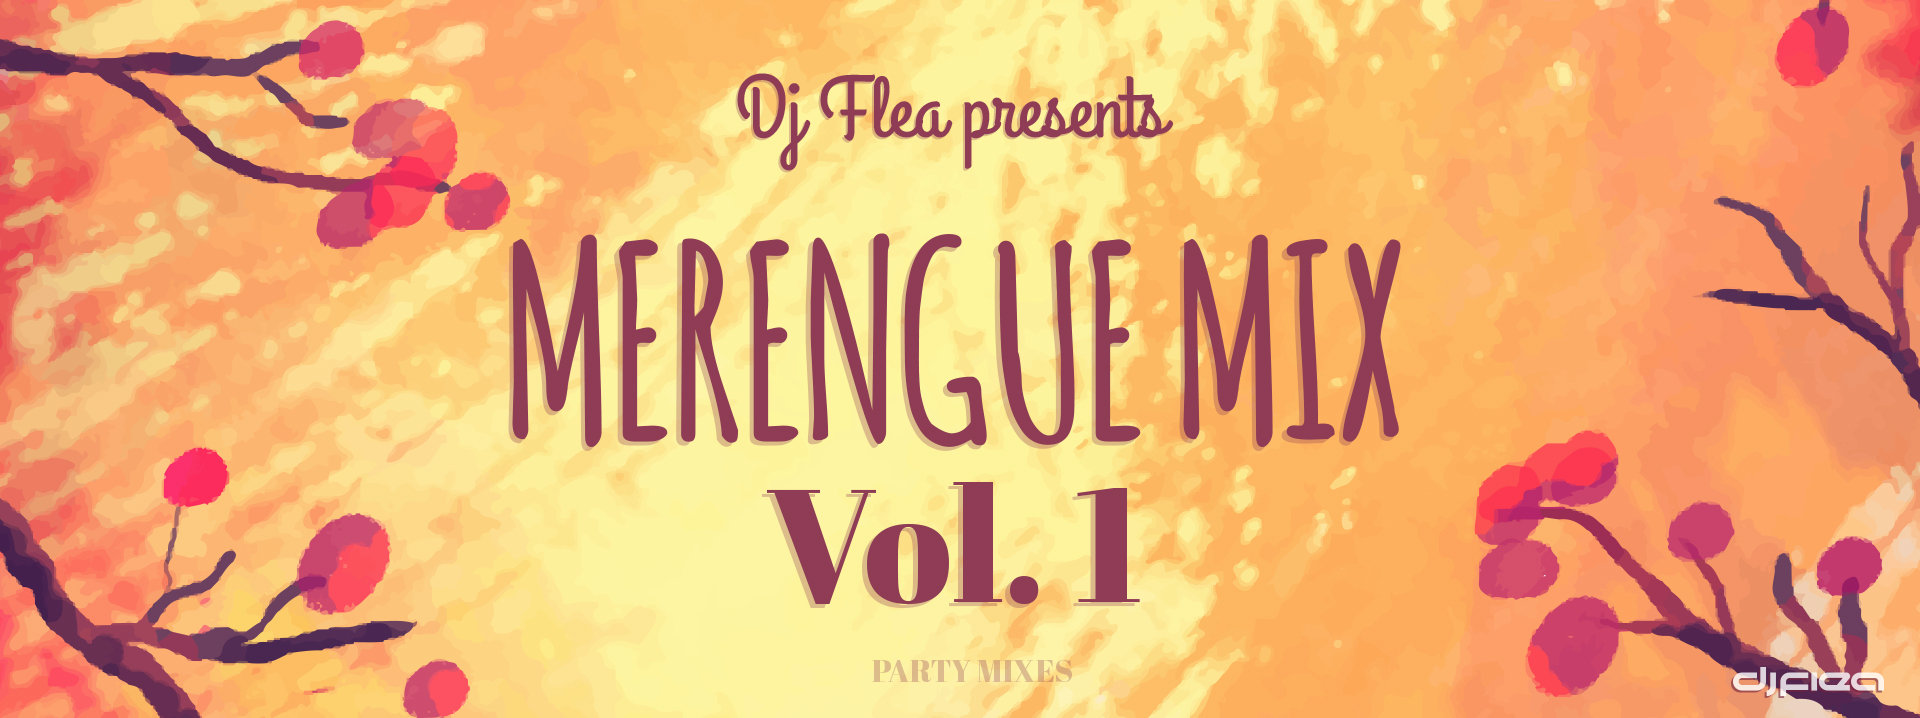 Merengue Mix, Vol. 1